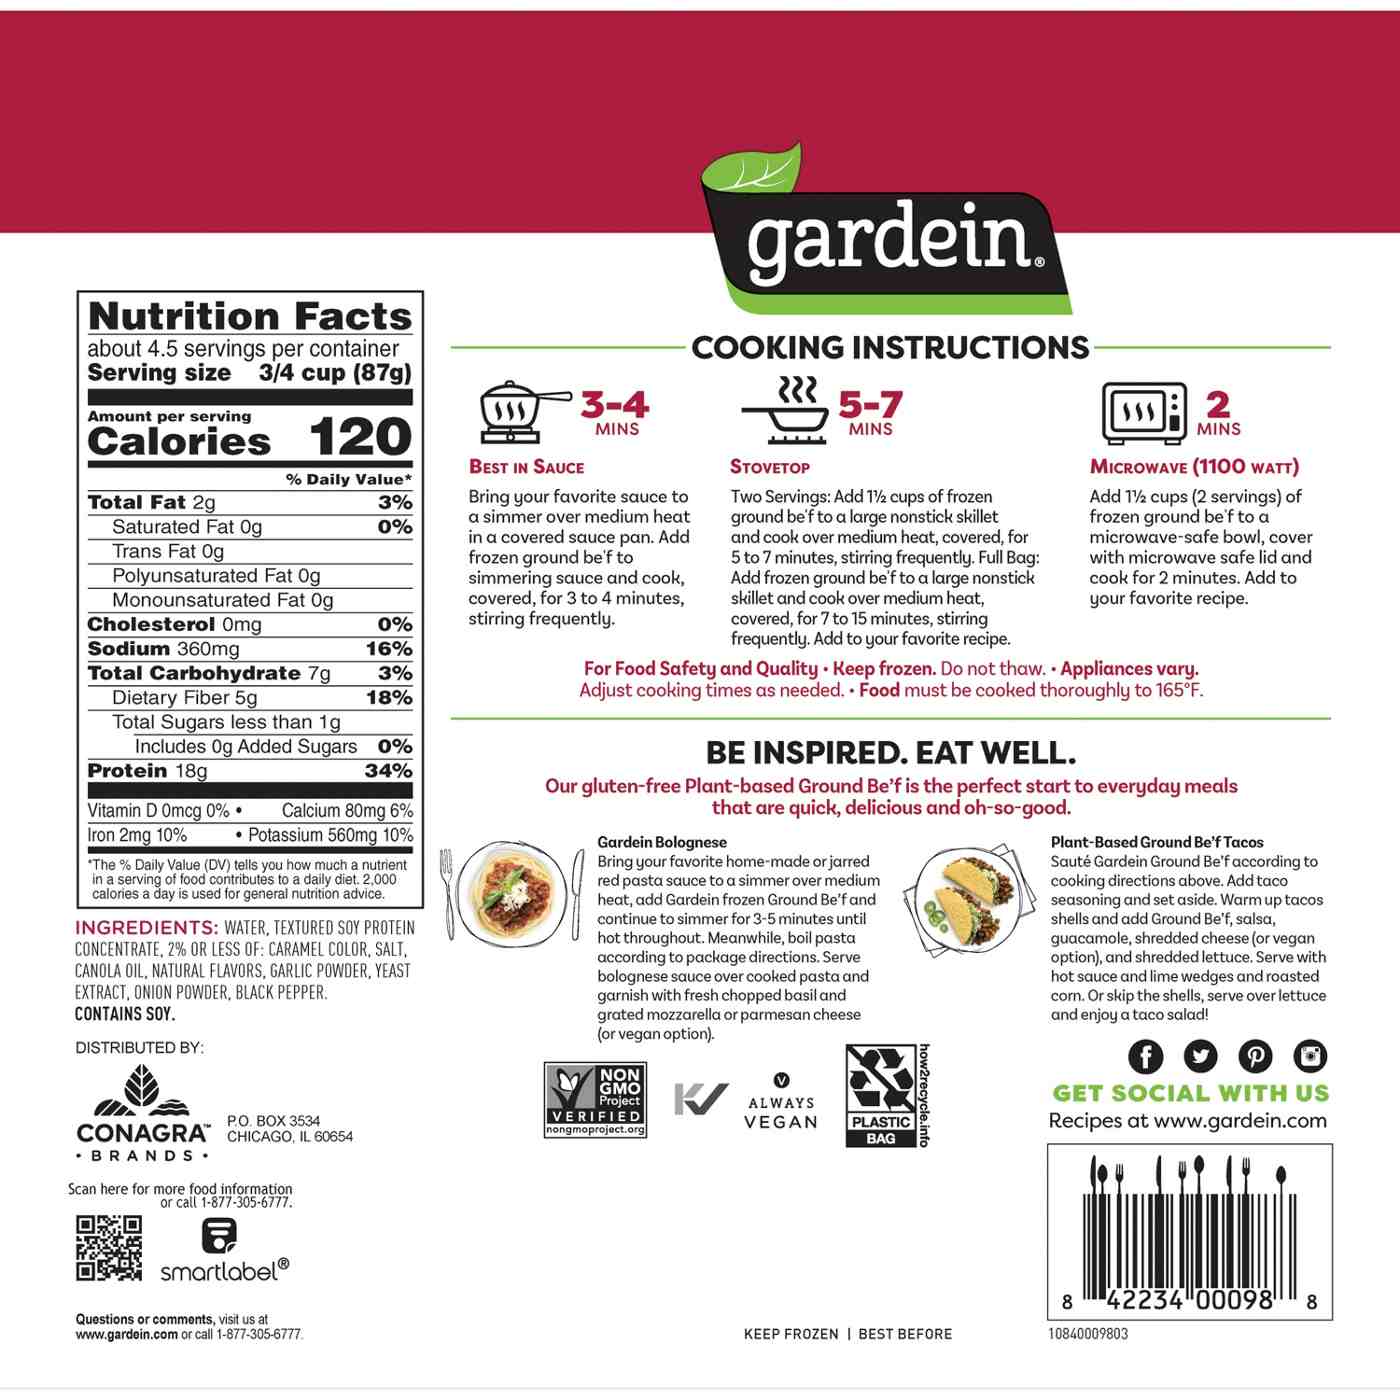 Gardein Vegan Frozen Gluten-Free Plant-Based Ground Be'f Crumbles; image 4 of 7